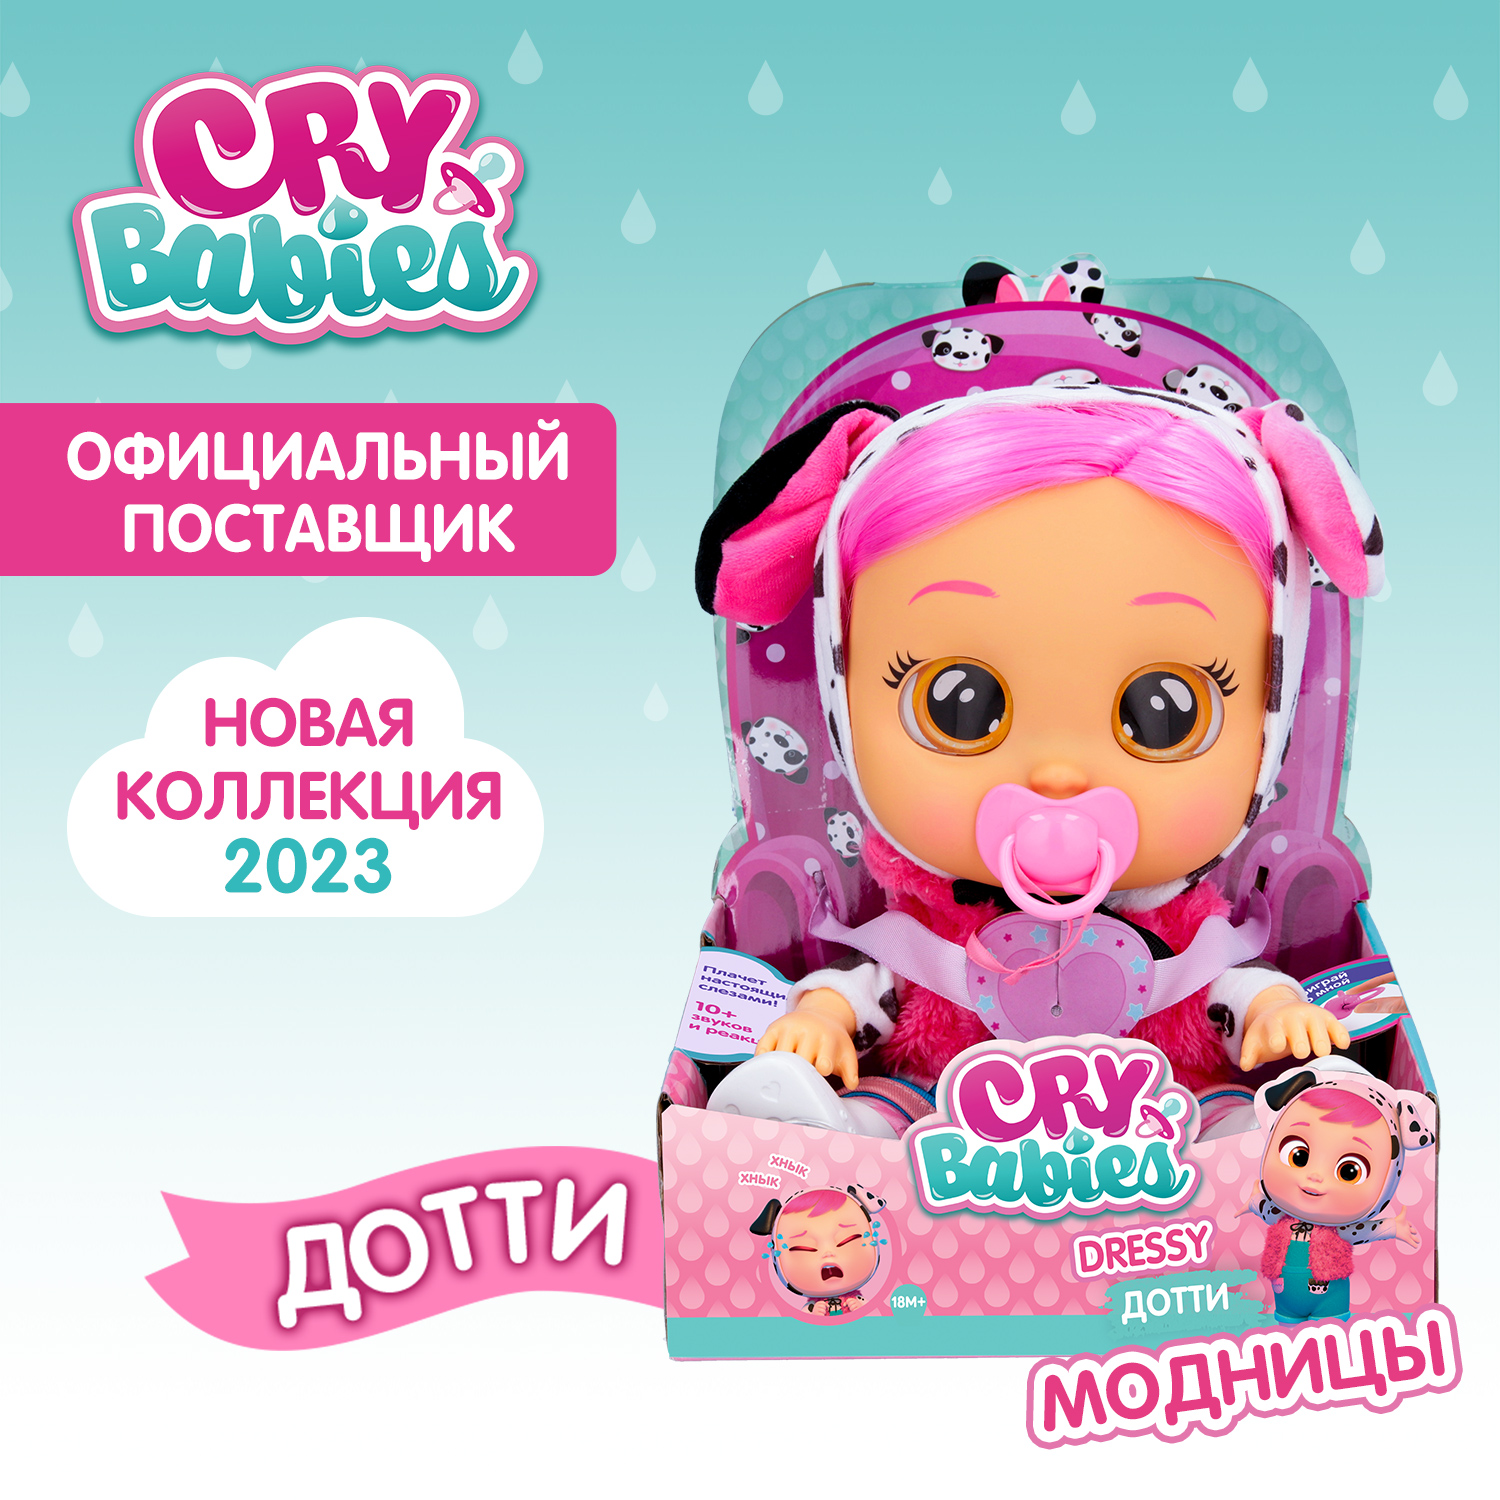 Кукла Cry Babies Дотти Модница, интерактивная, плачущая, 40884 кукла cry babies стелла поцелуй меня интерактивная плачущая 40891